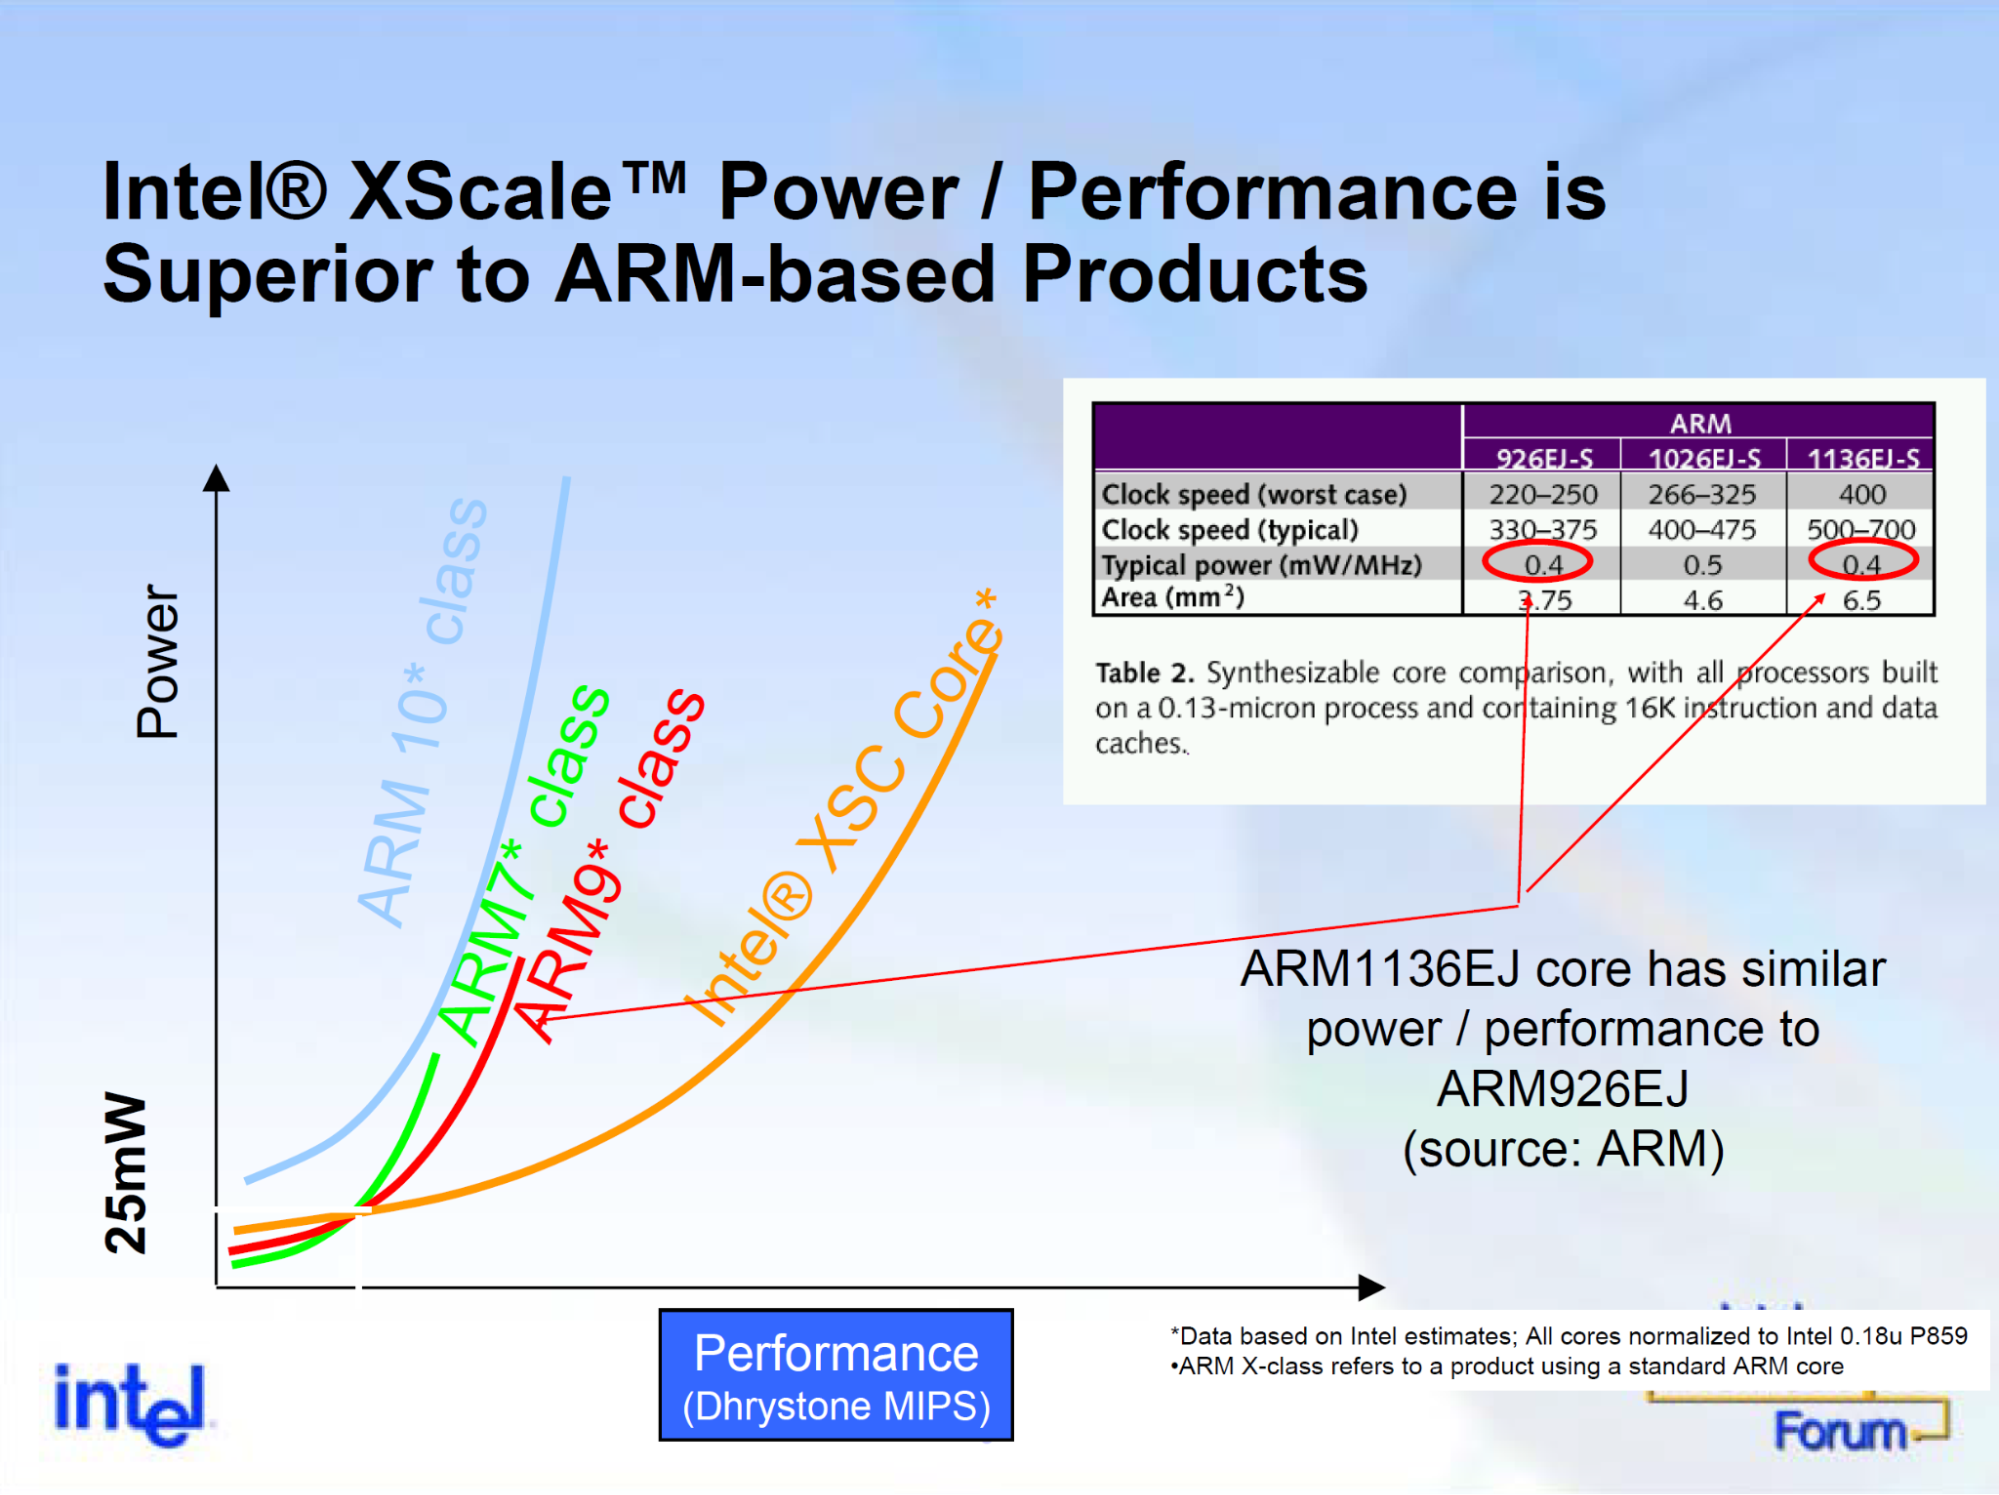 照片中提到了Intel® XScale TM Power / Performance is、Superior to ARM-based Products、ARM，跟迅馳有關，包含了英特爾、英特爾、XScale、ARM架構、線